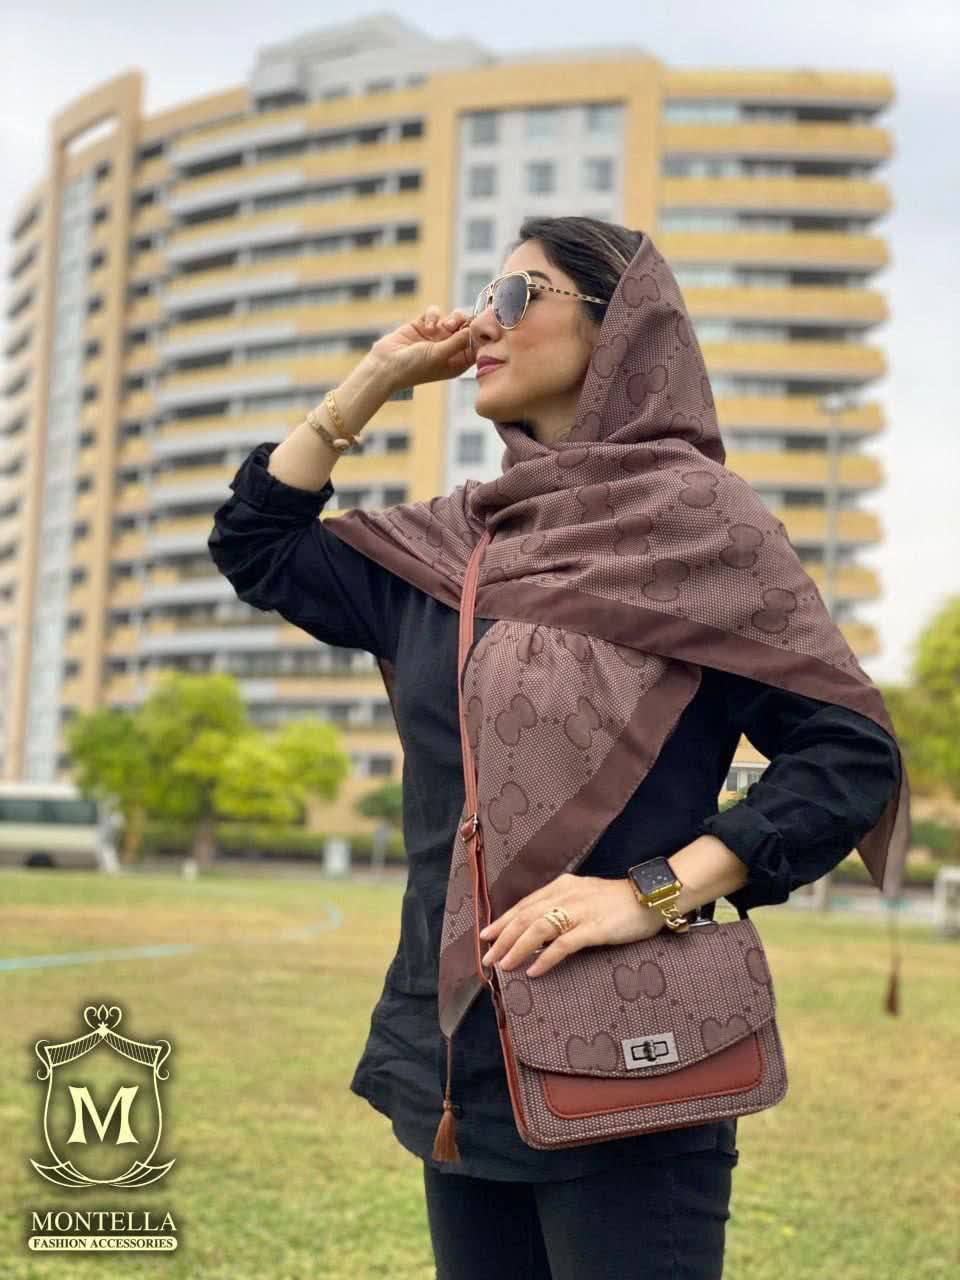 ست کیف و روسری زنانه طرح سی سی رنگ قهوه ای با کیف دسته چرمی کیفیت عالی با ارسال رایگان کد mo417